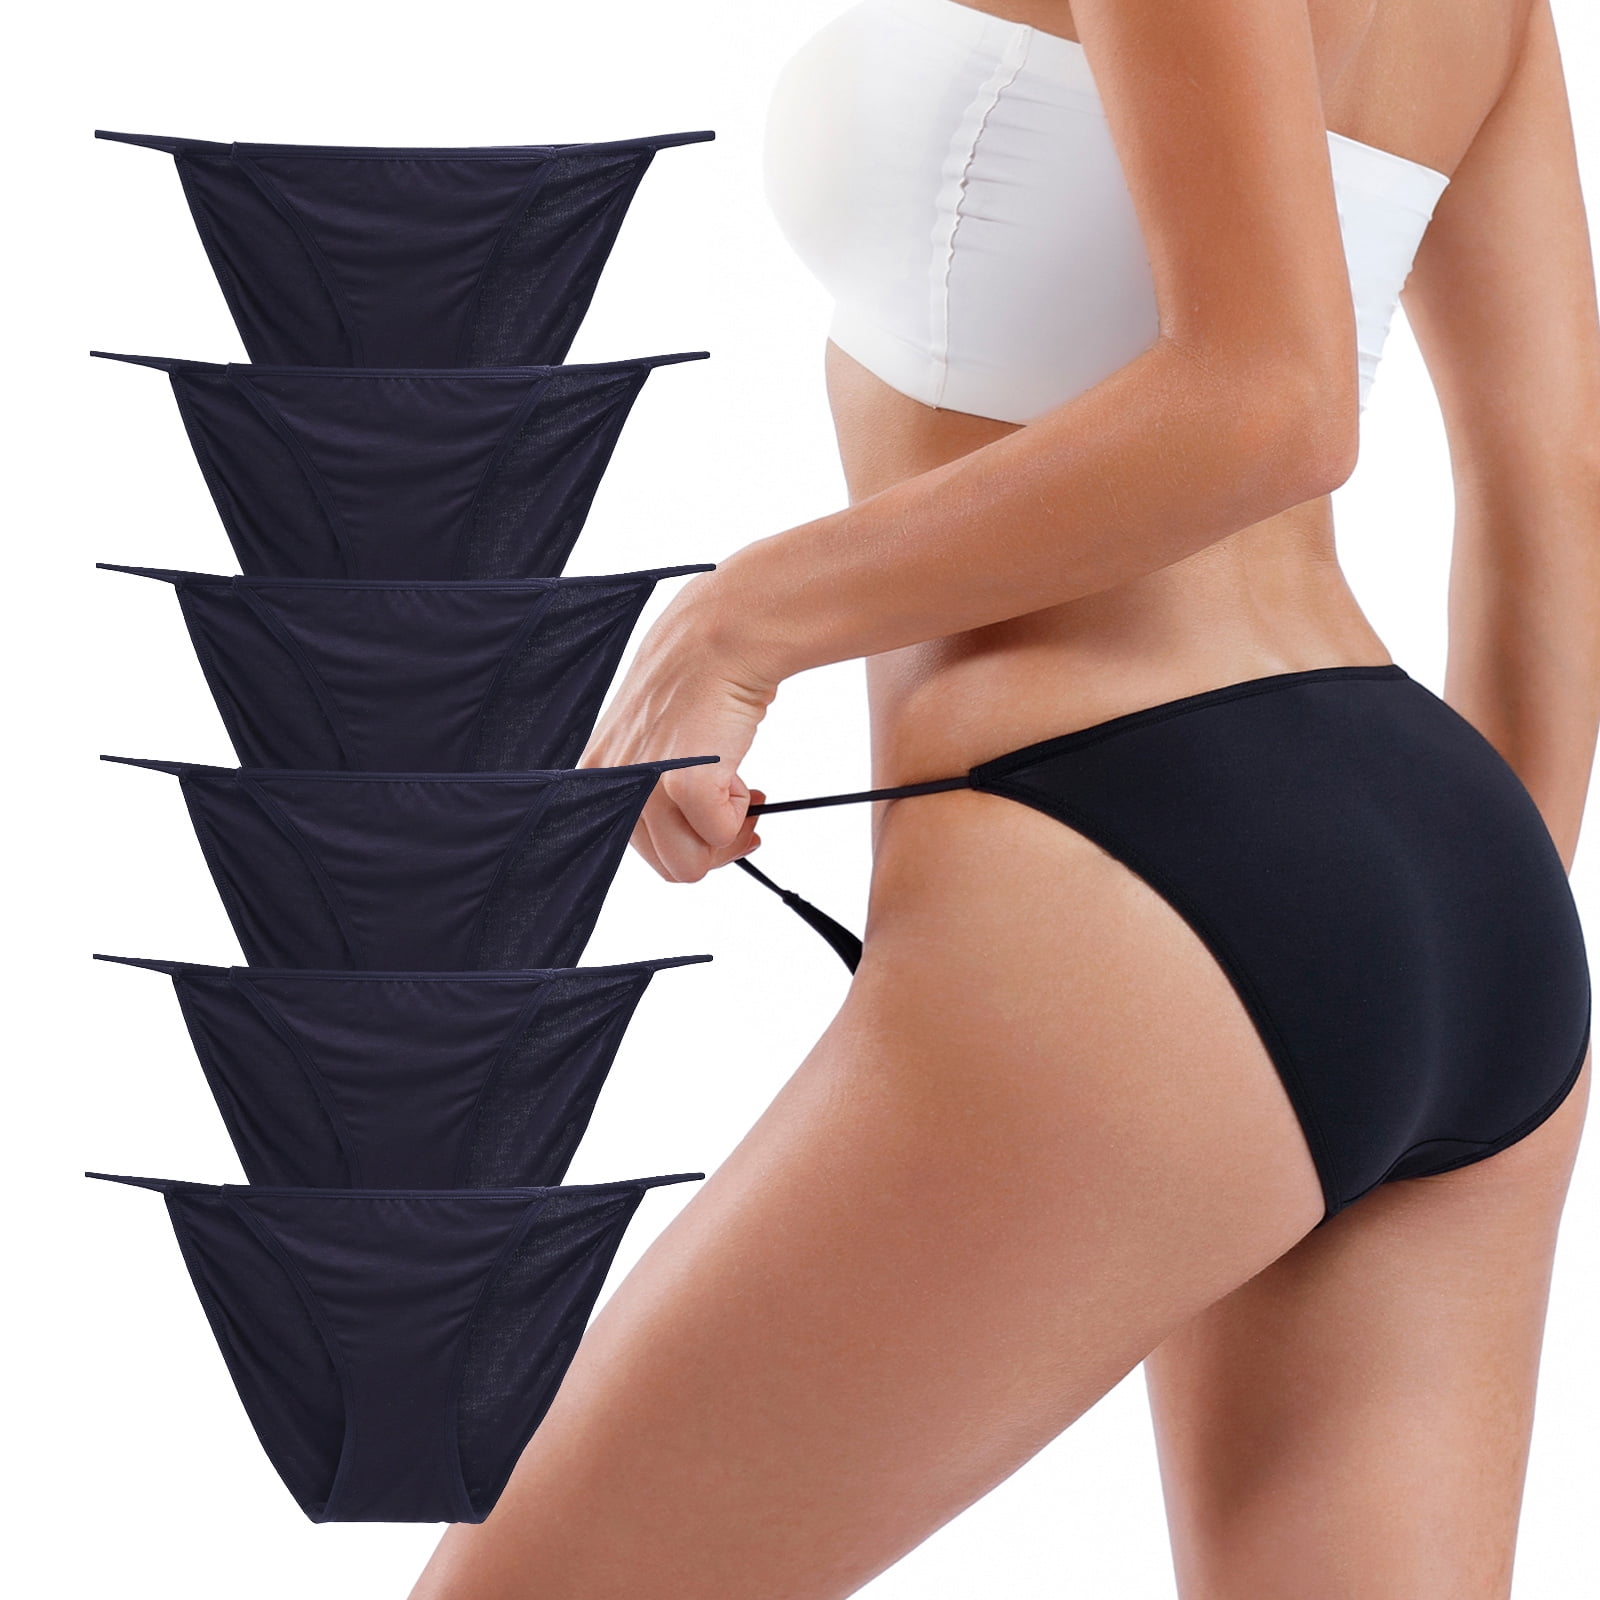 Buankoxy 6 Pack Women's Low-Rise String Bikini Panty Stretch